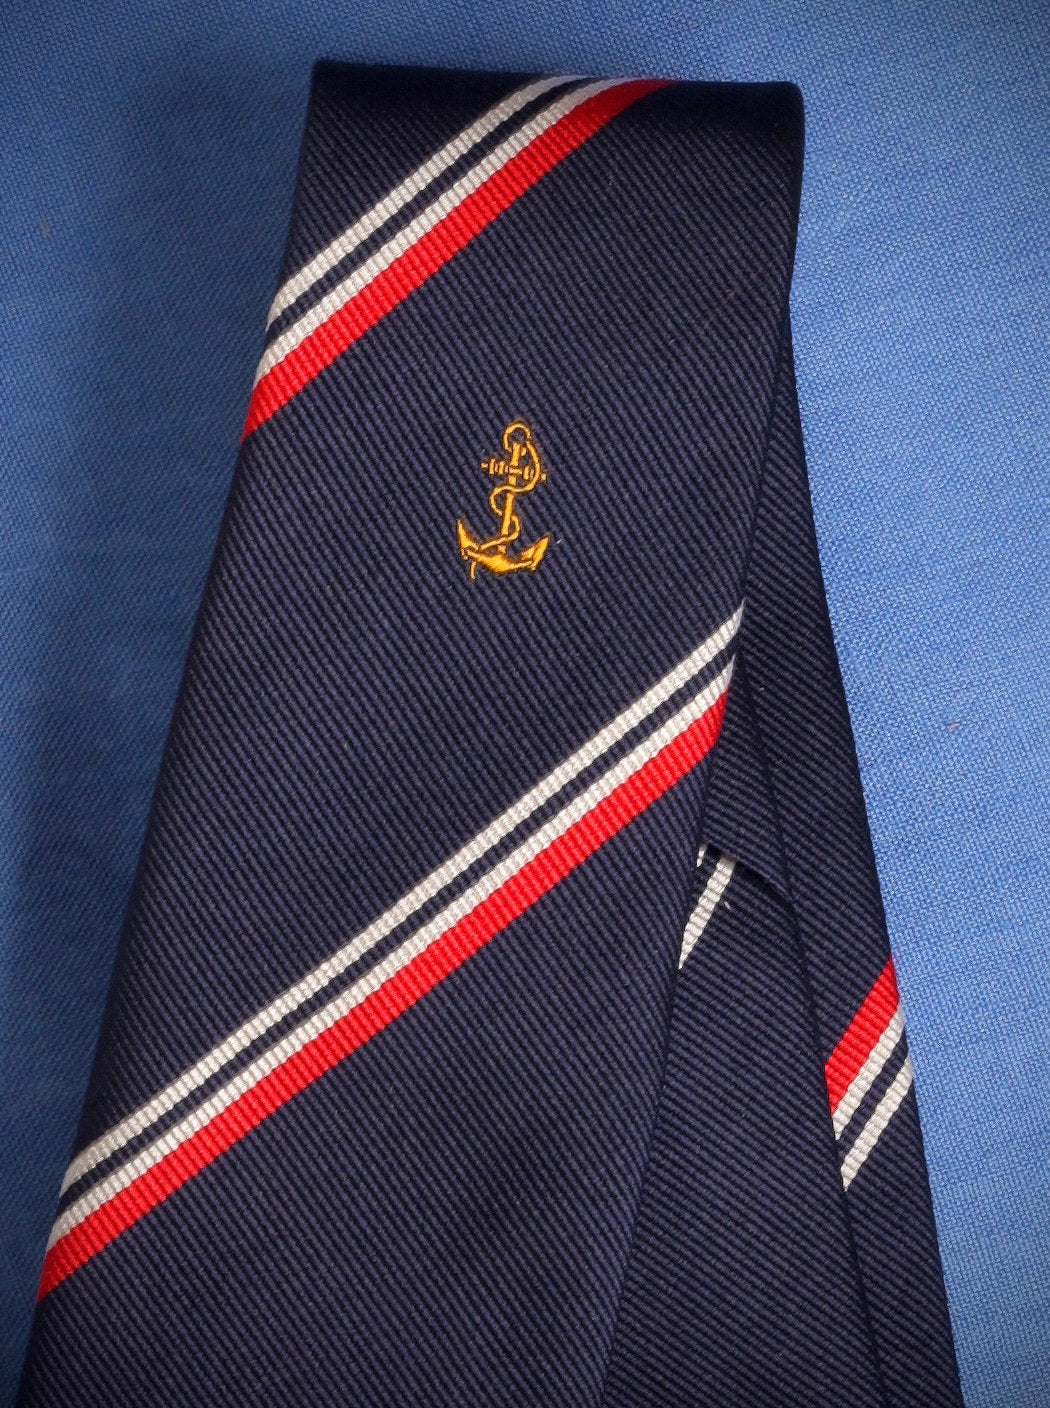 Cravate « Marine nationale »